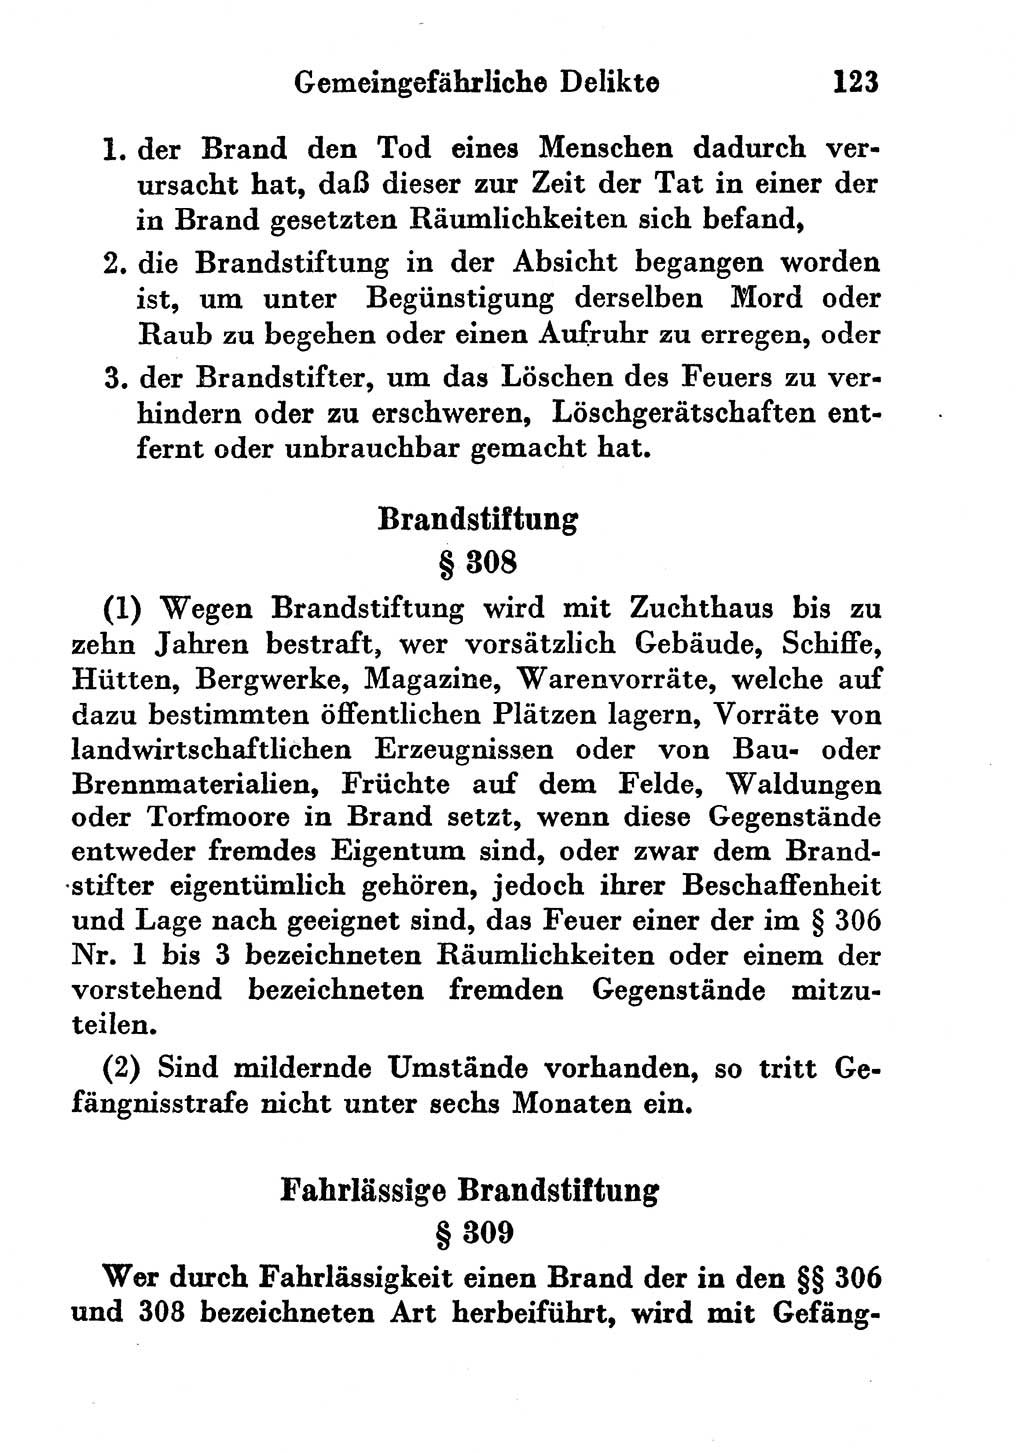 Strafgesetzbuch (StGB) und andere Strafgesetze [Deutsche Demokratische Republik (DDR)] 1956, Seite 123 (StGB Strafges. DDR 1956, S. 123)